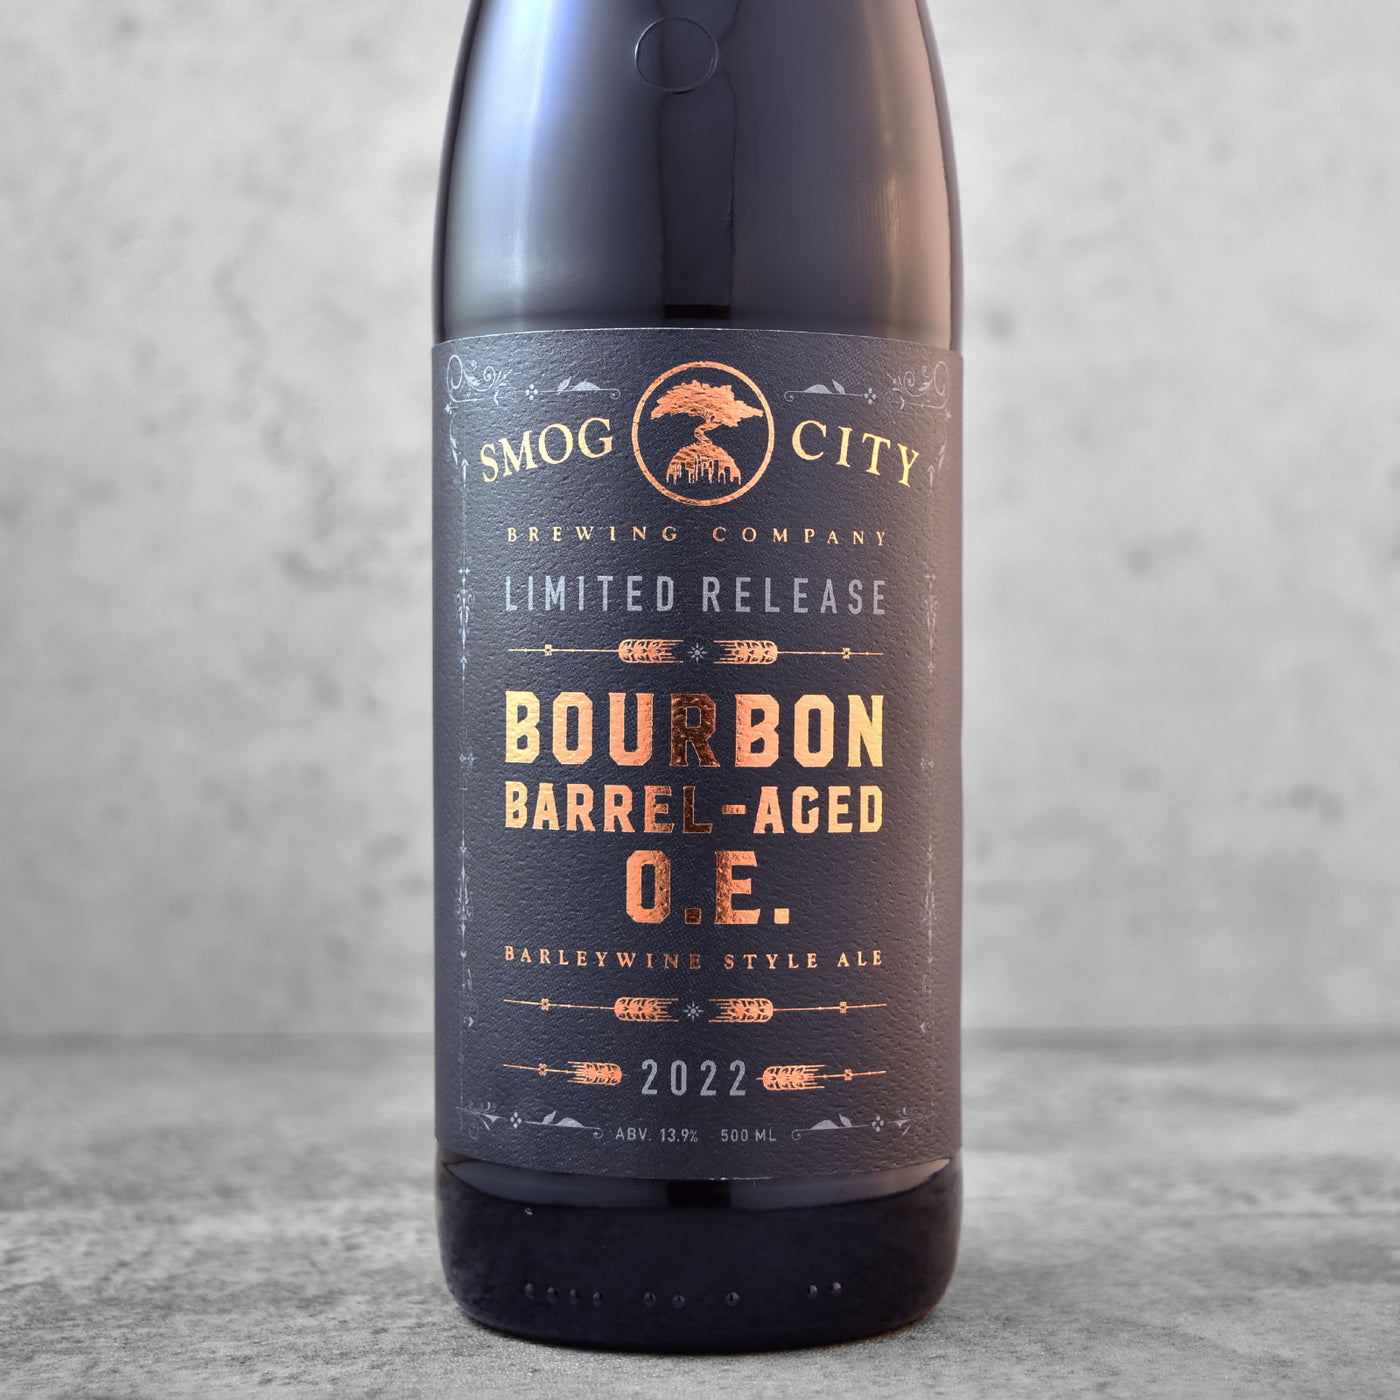 Smog City Bourbon Barrel-Aged O.E. 2022